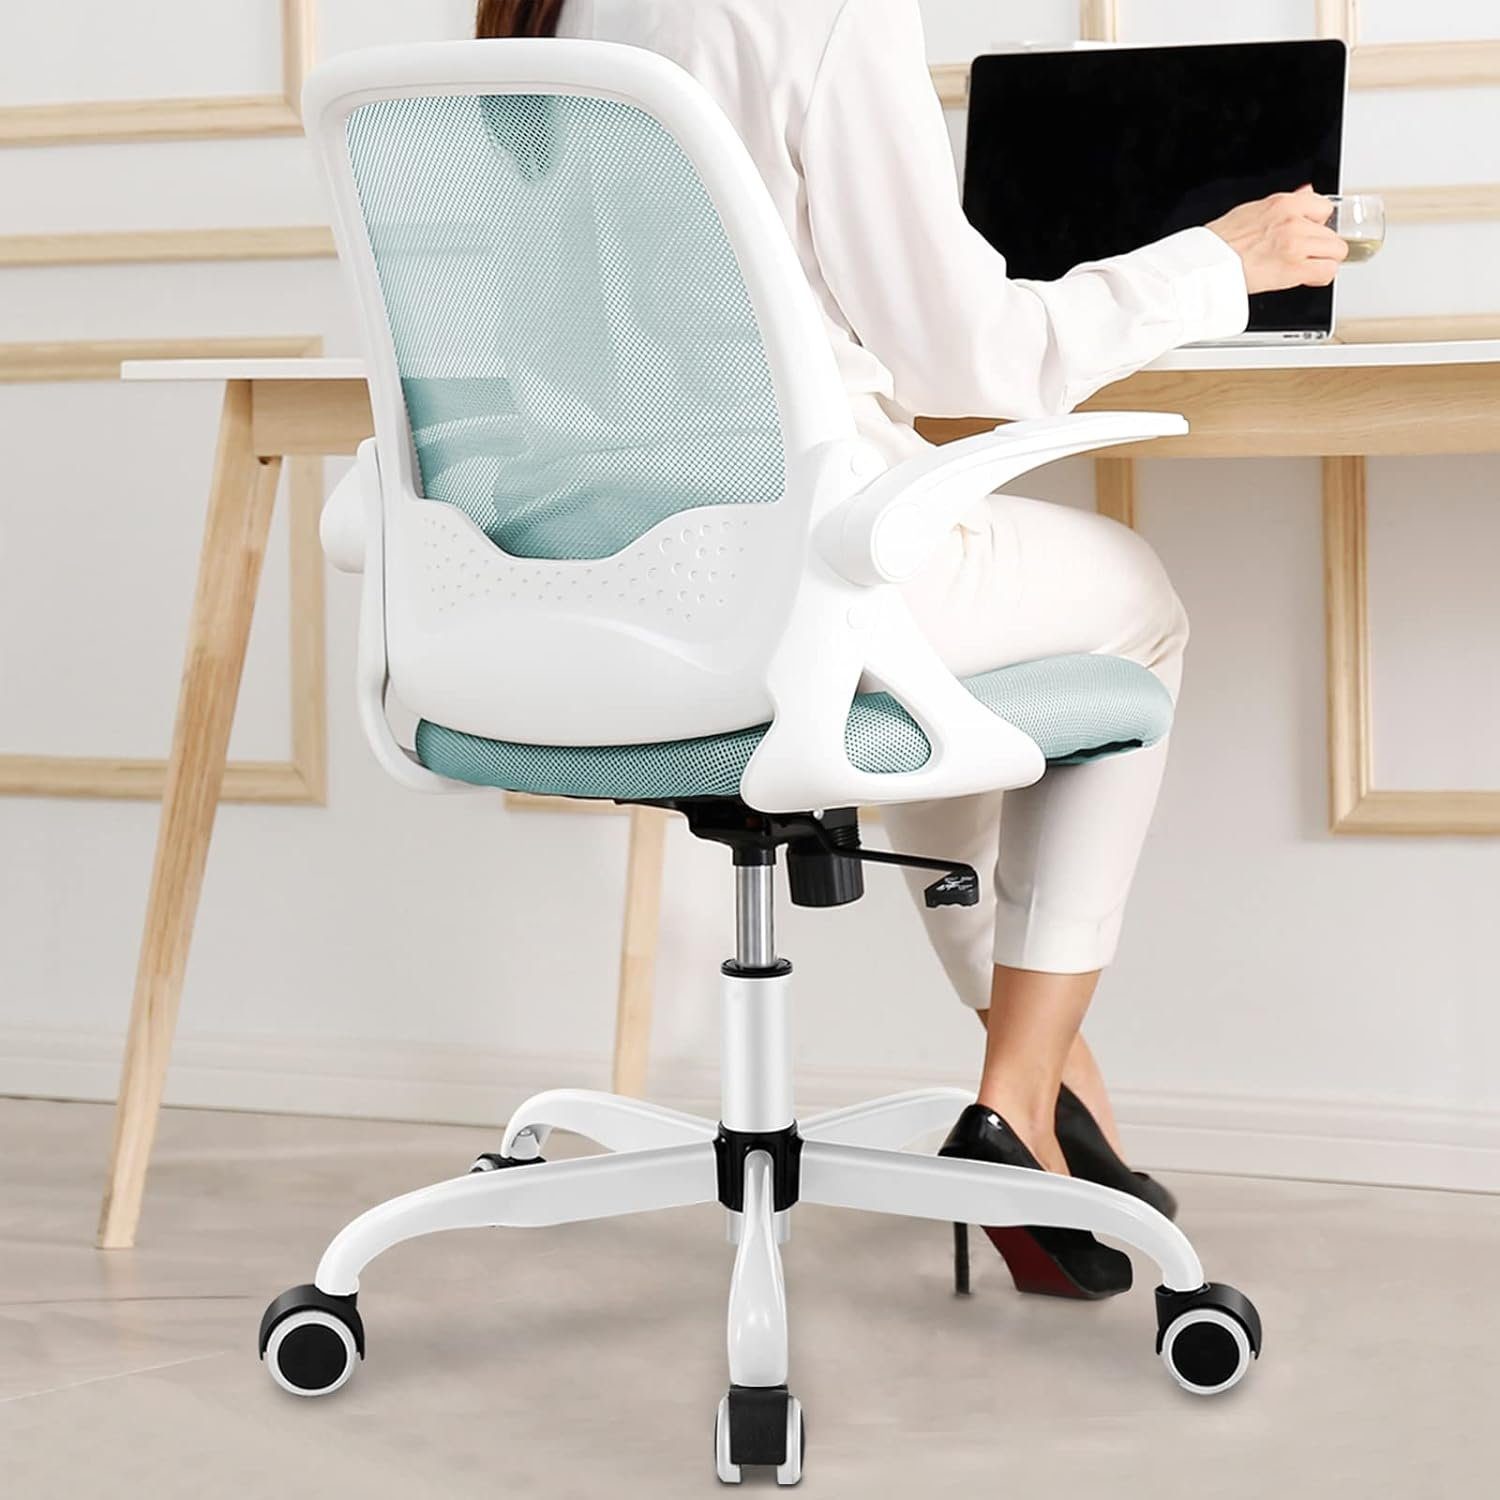 KERDOM Bürostuhl (Bürostuhl ergonomisch: Schreibtischstuhl mit verstellbarem Sitz), Bürostuhl, Ergonomischer Schreibtischstuhl mit klappbarer Armlehnen